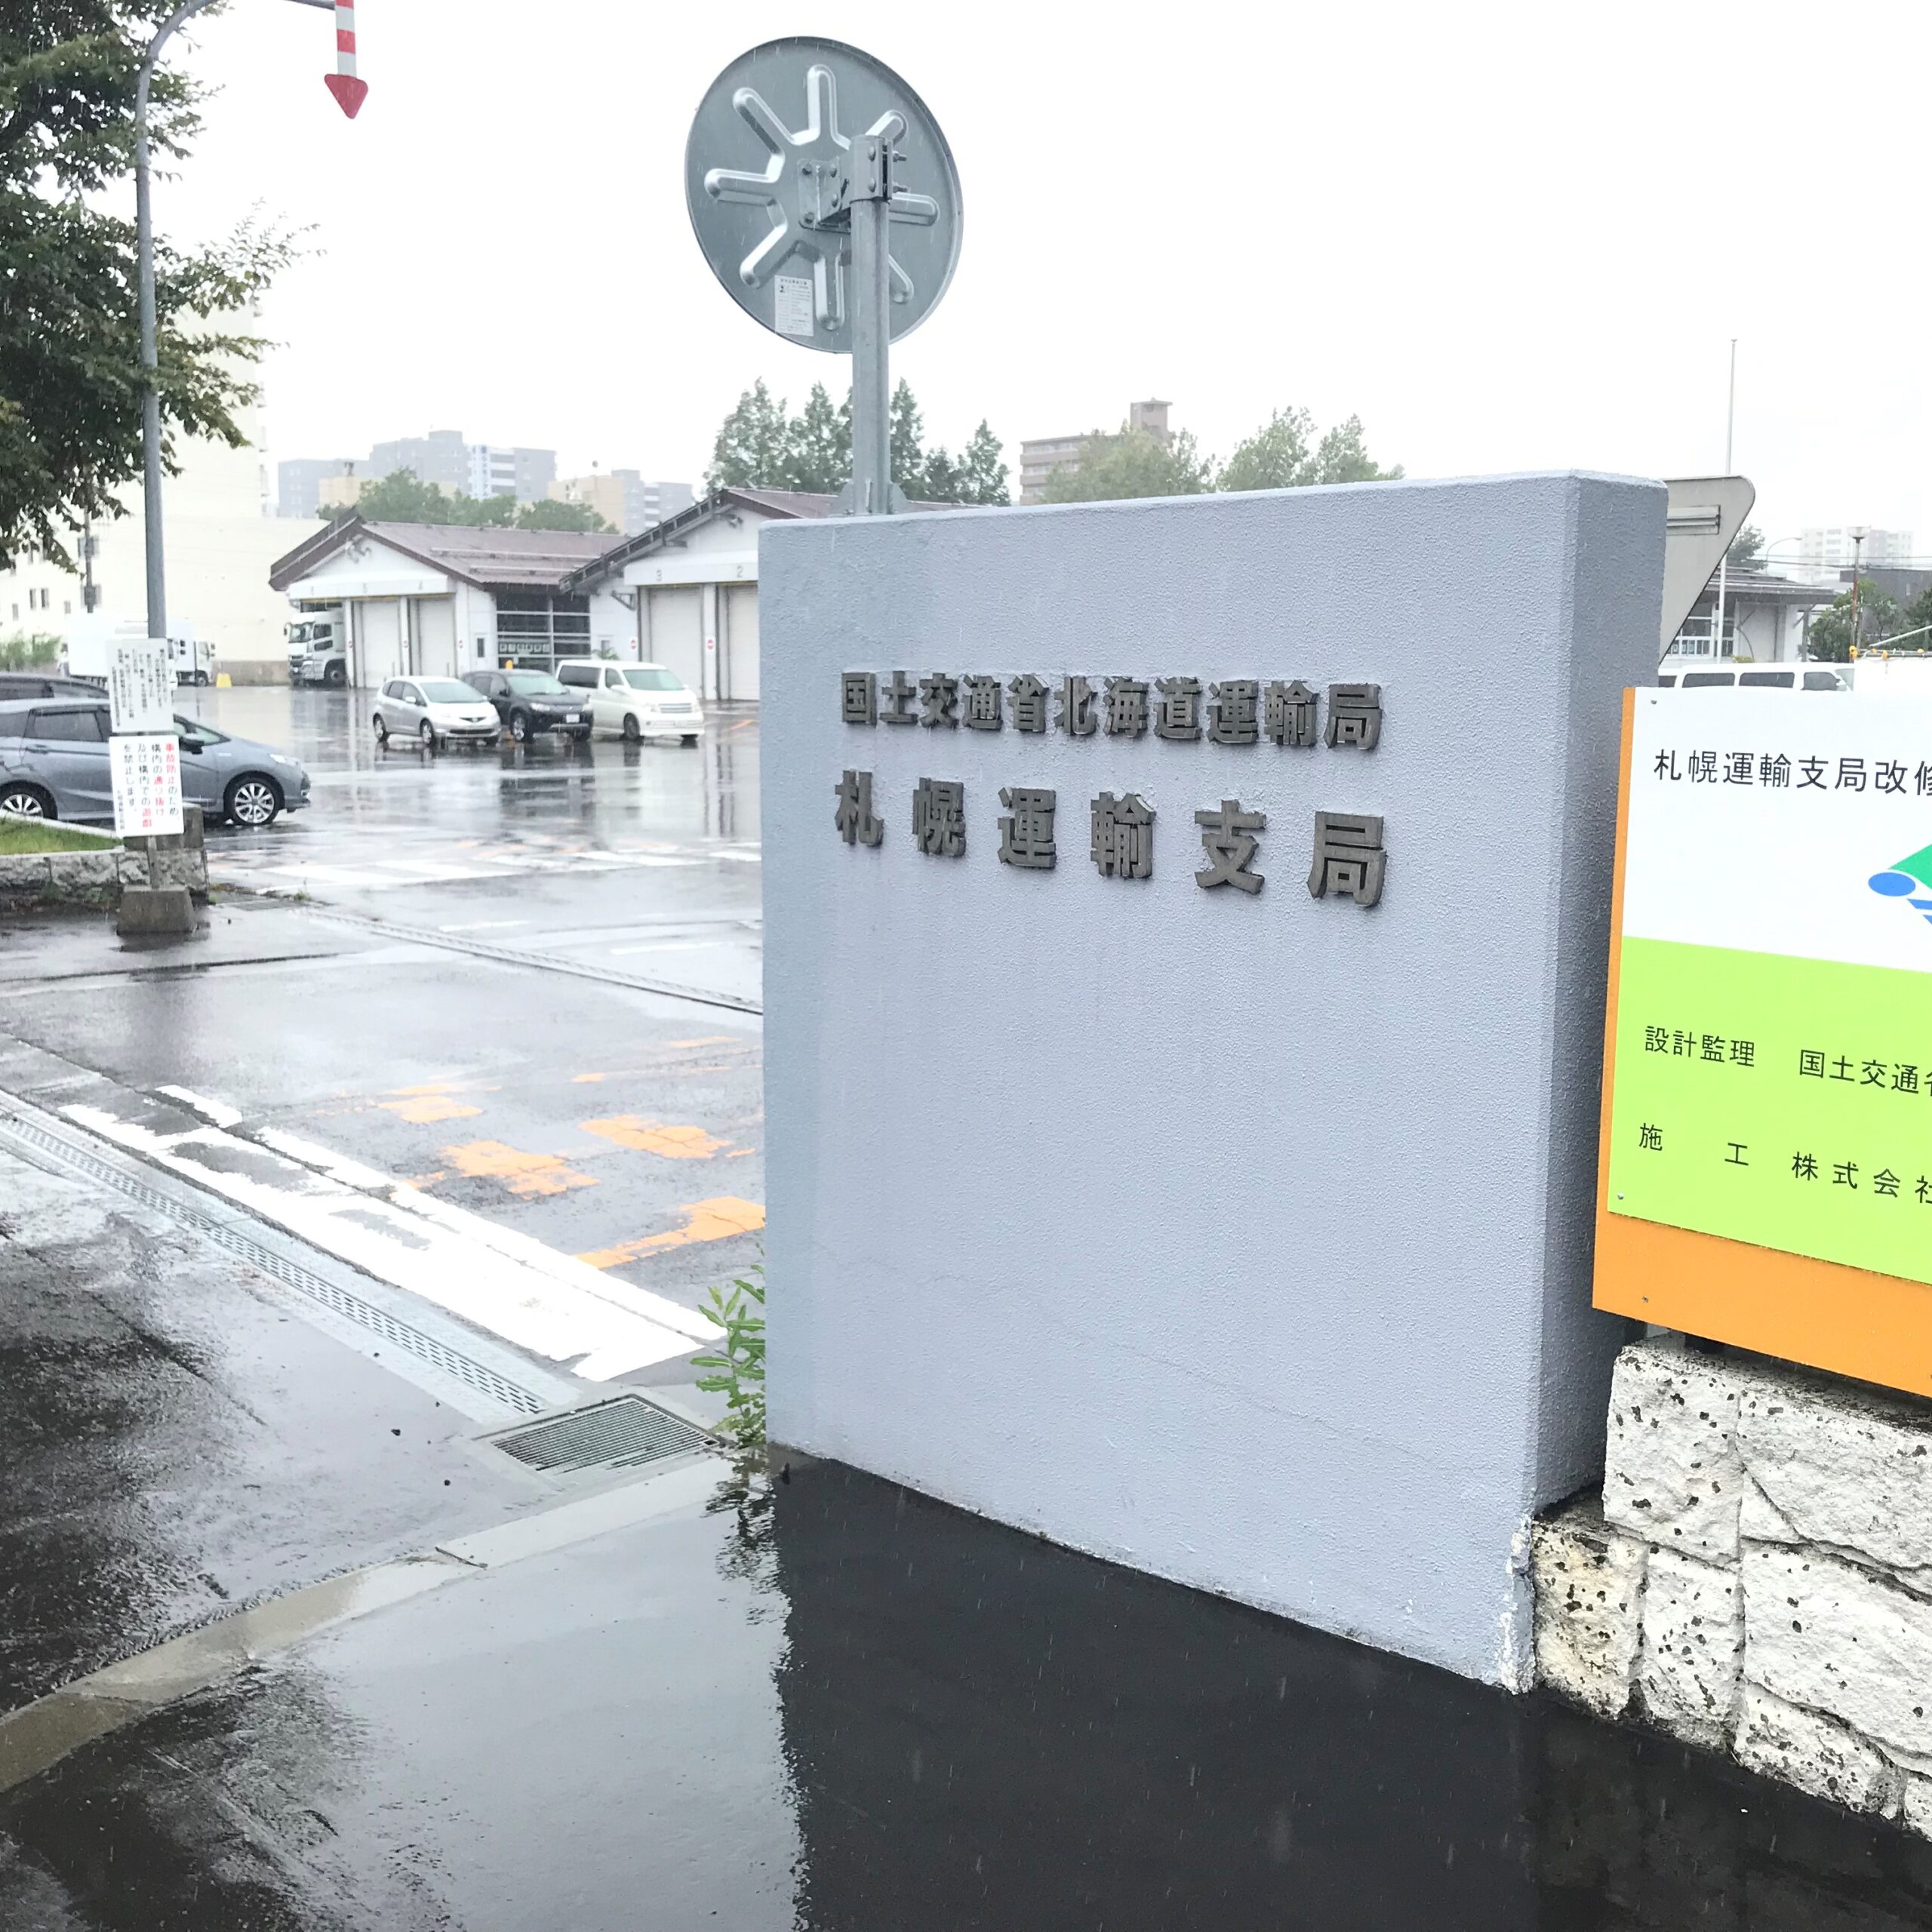 札幌運輸支局でユーザー車検を受ける方法